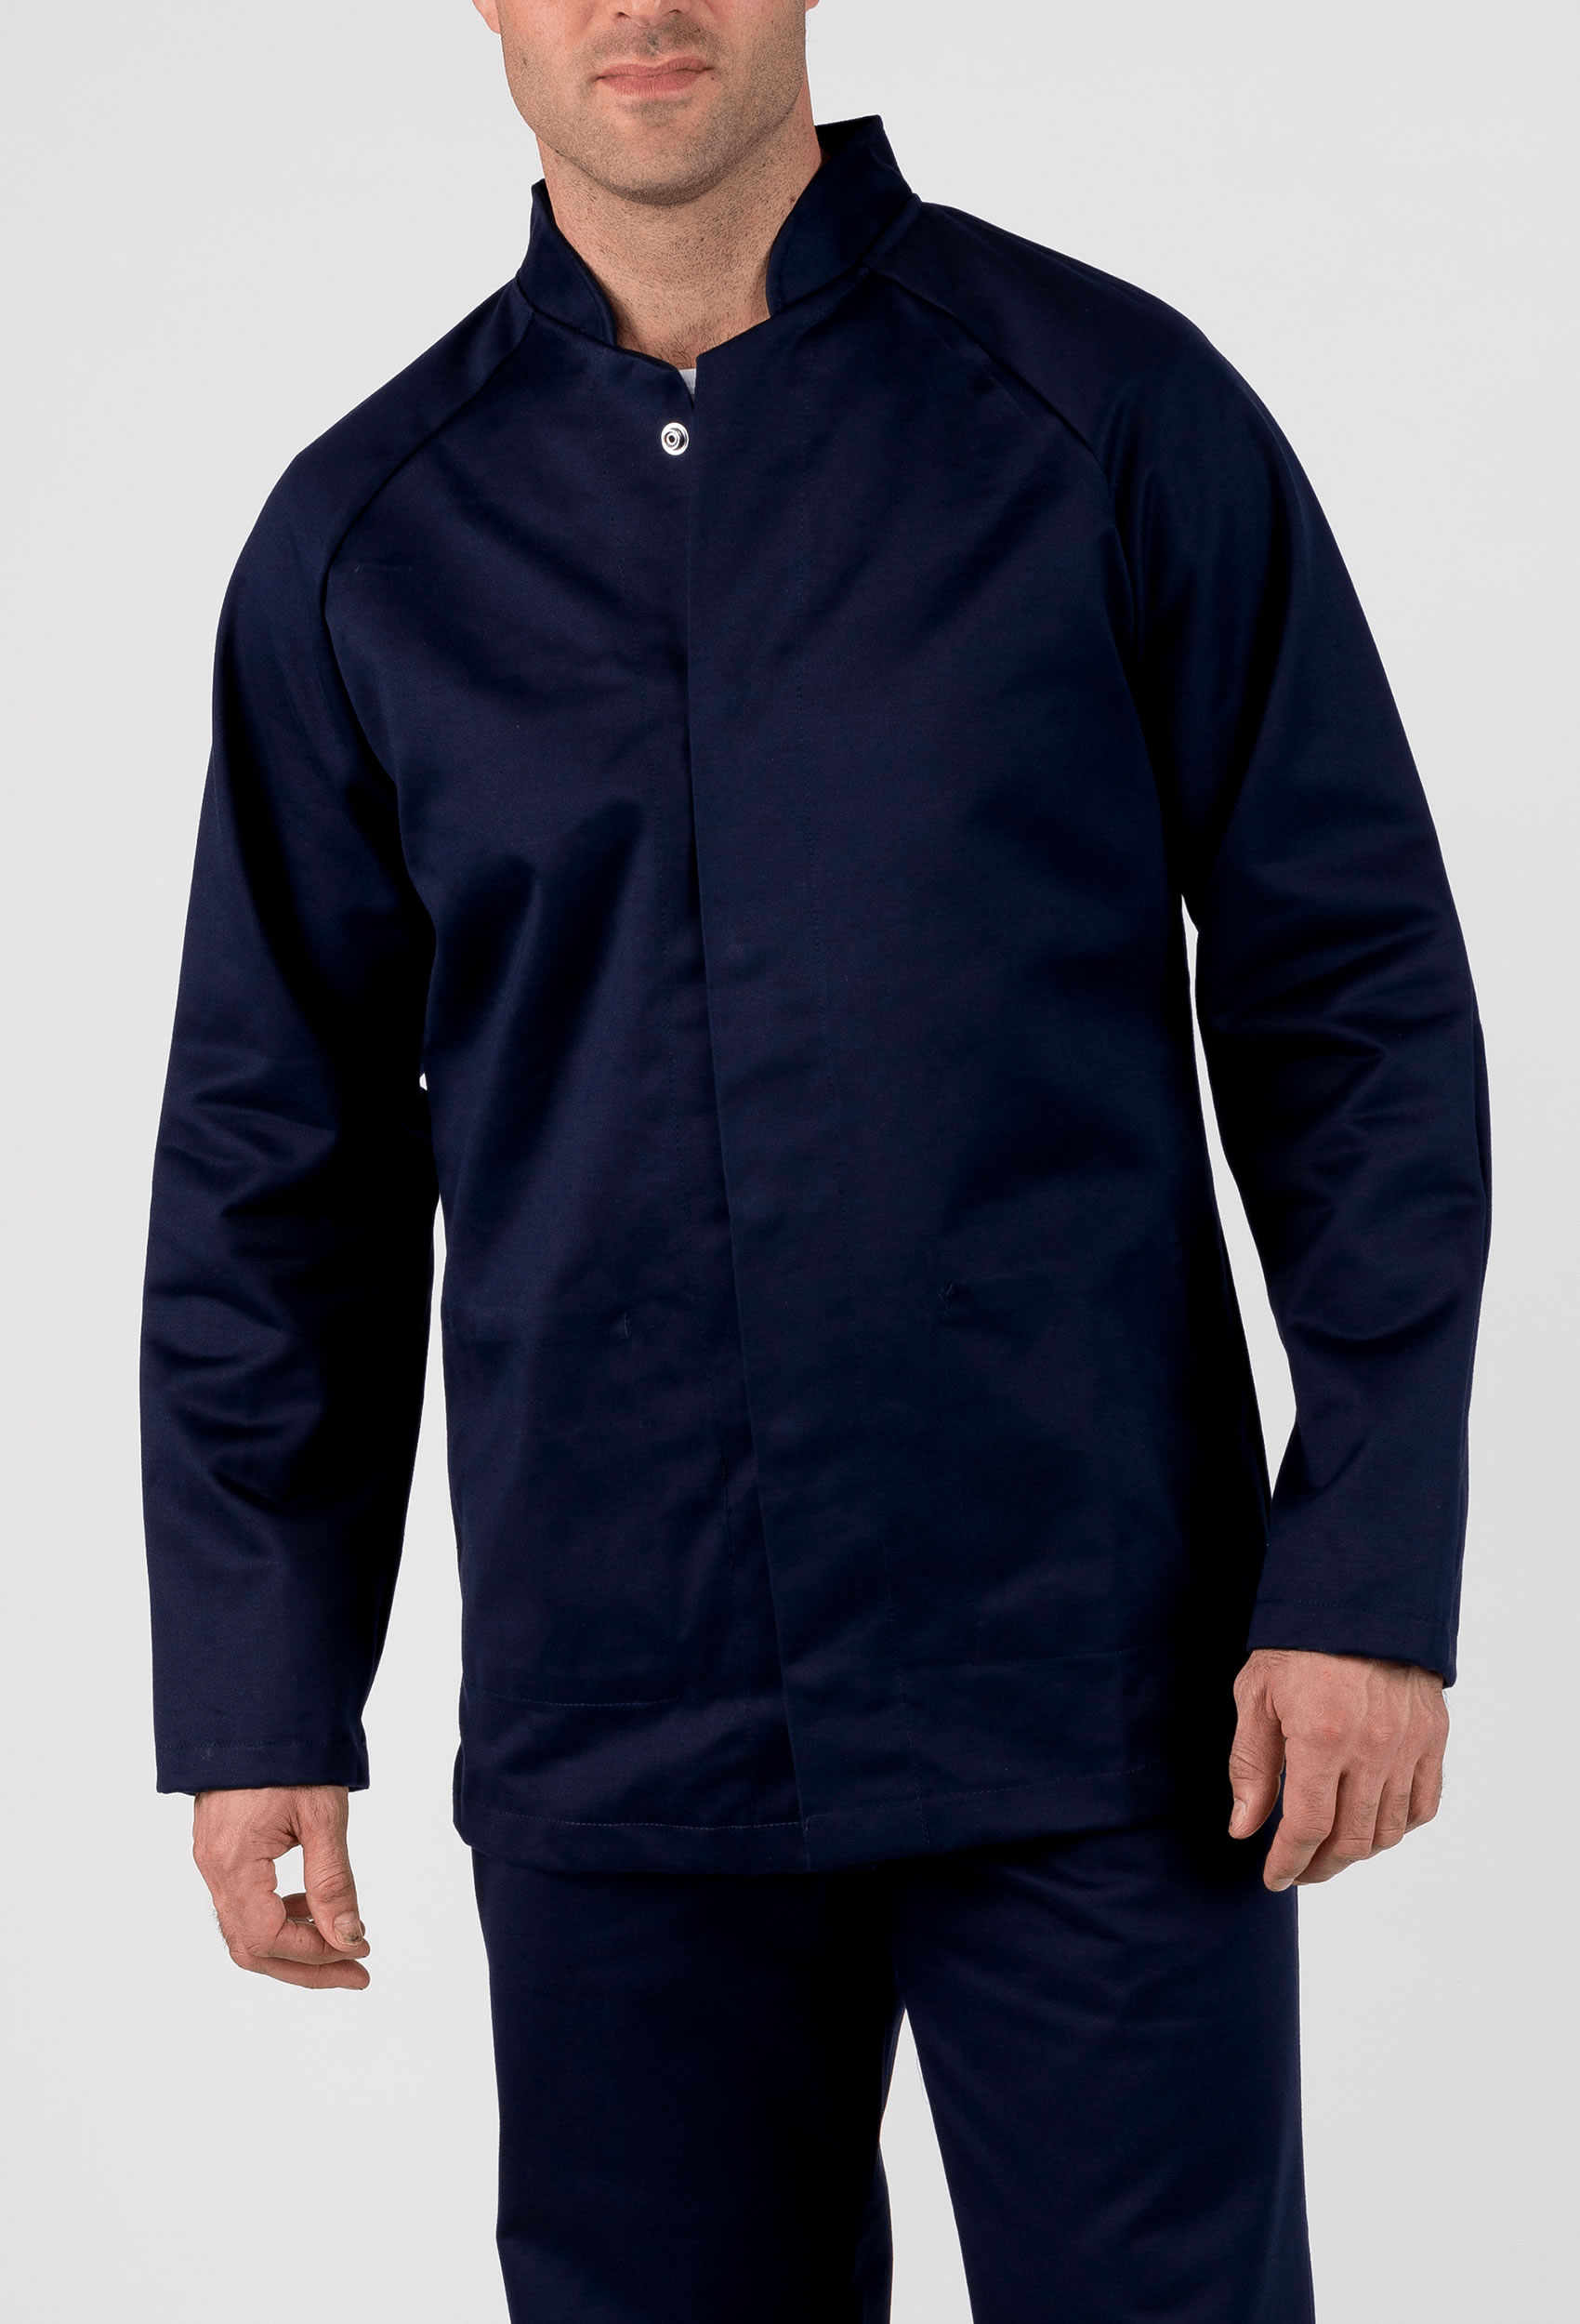 Molten Iron Splash Jacket | Workwear Jacket Rental | CLEAN